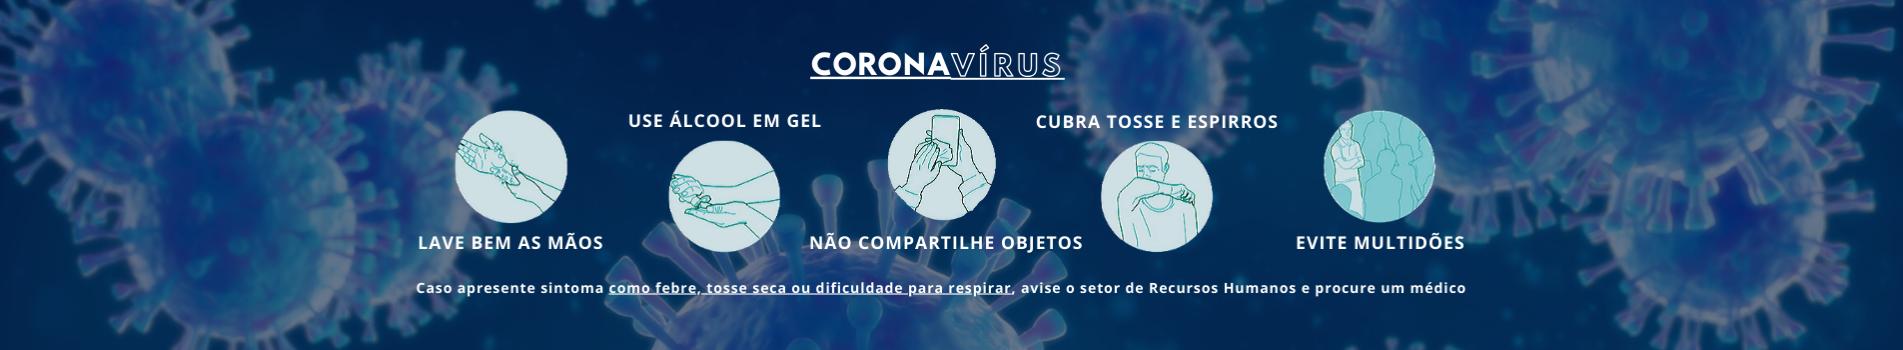 Coronavírus: proteja-se